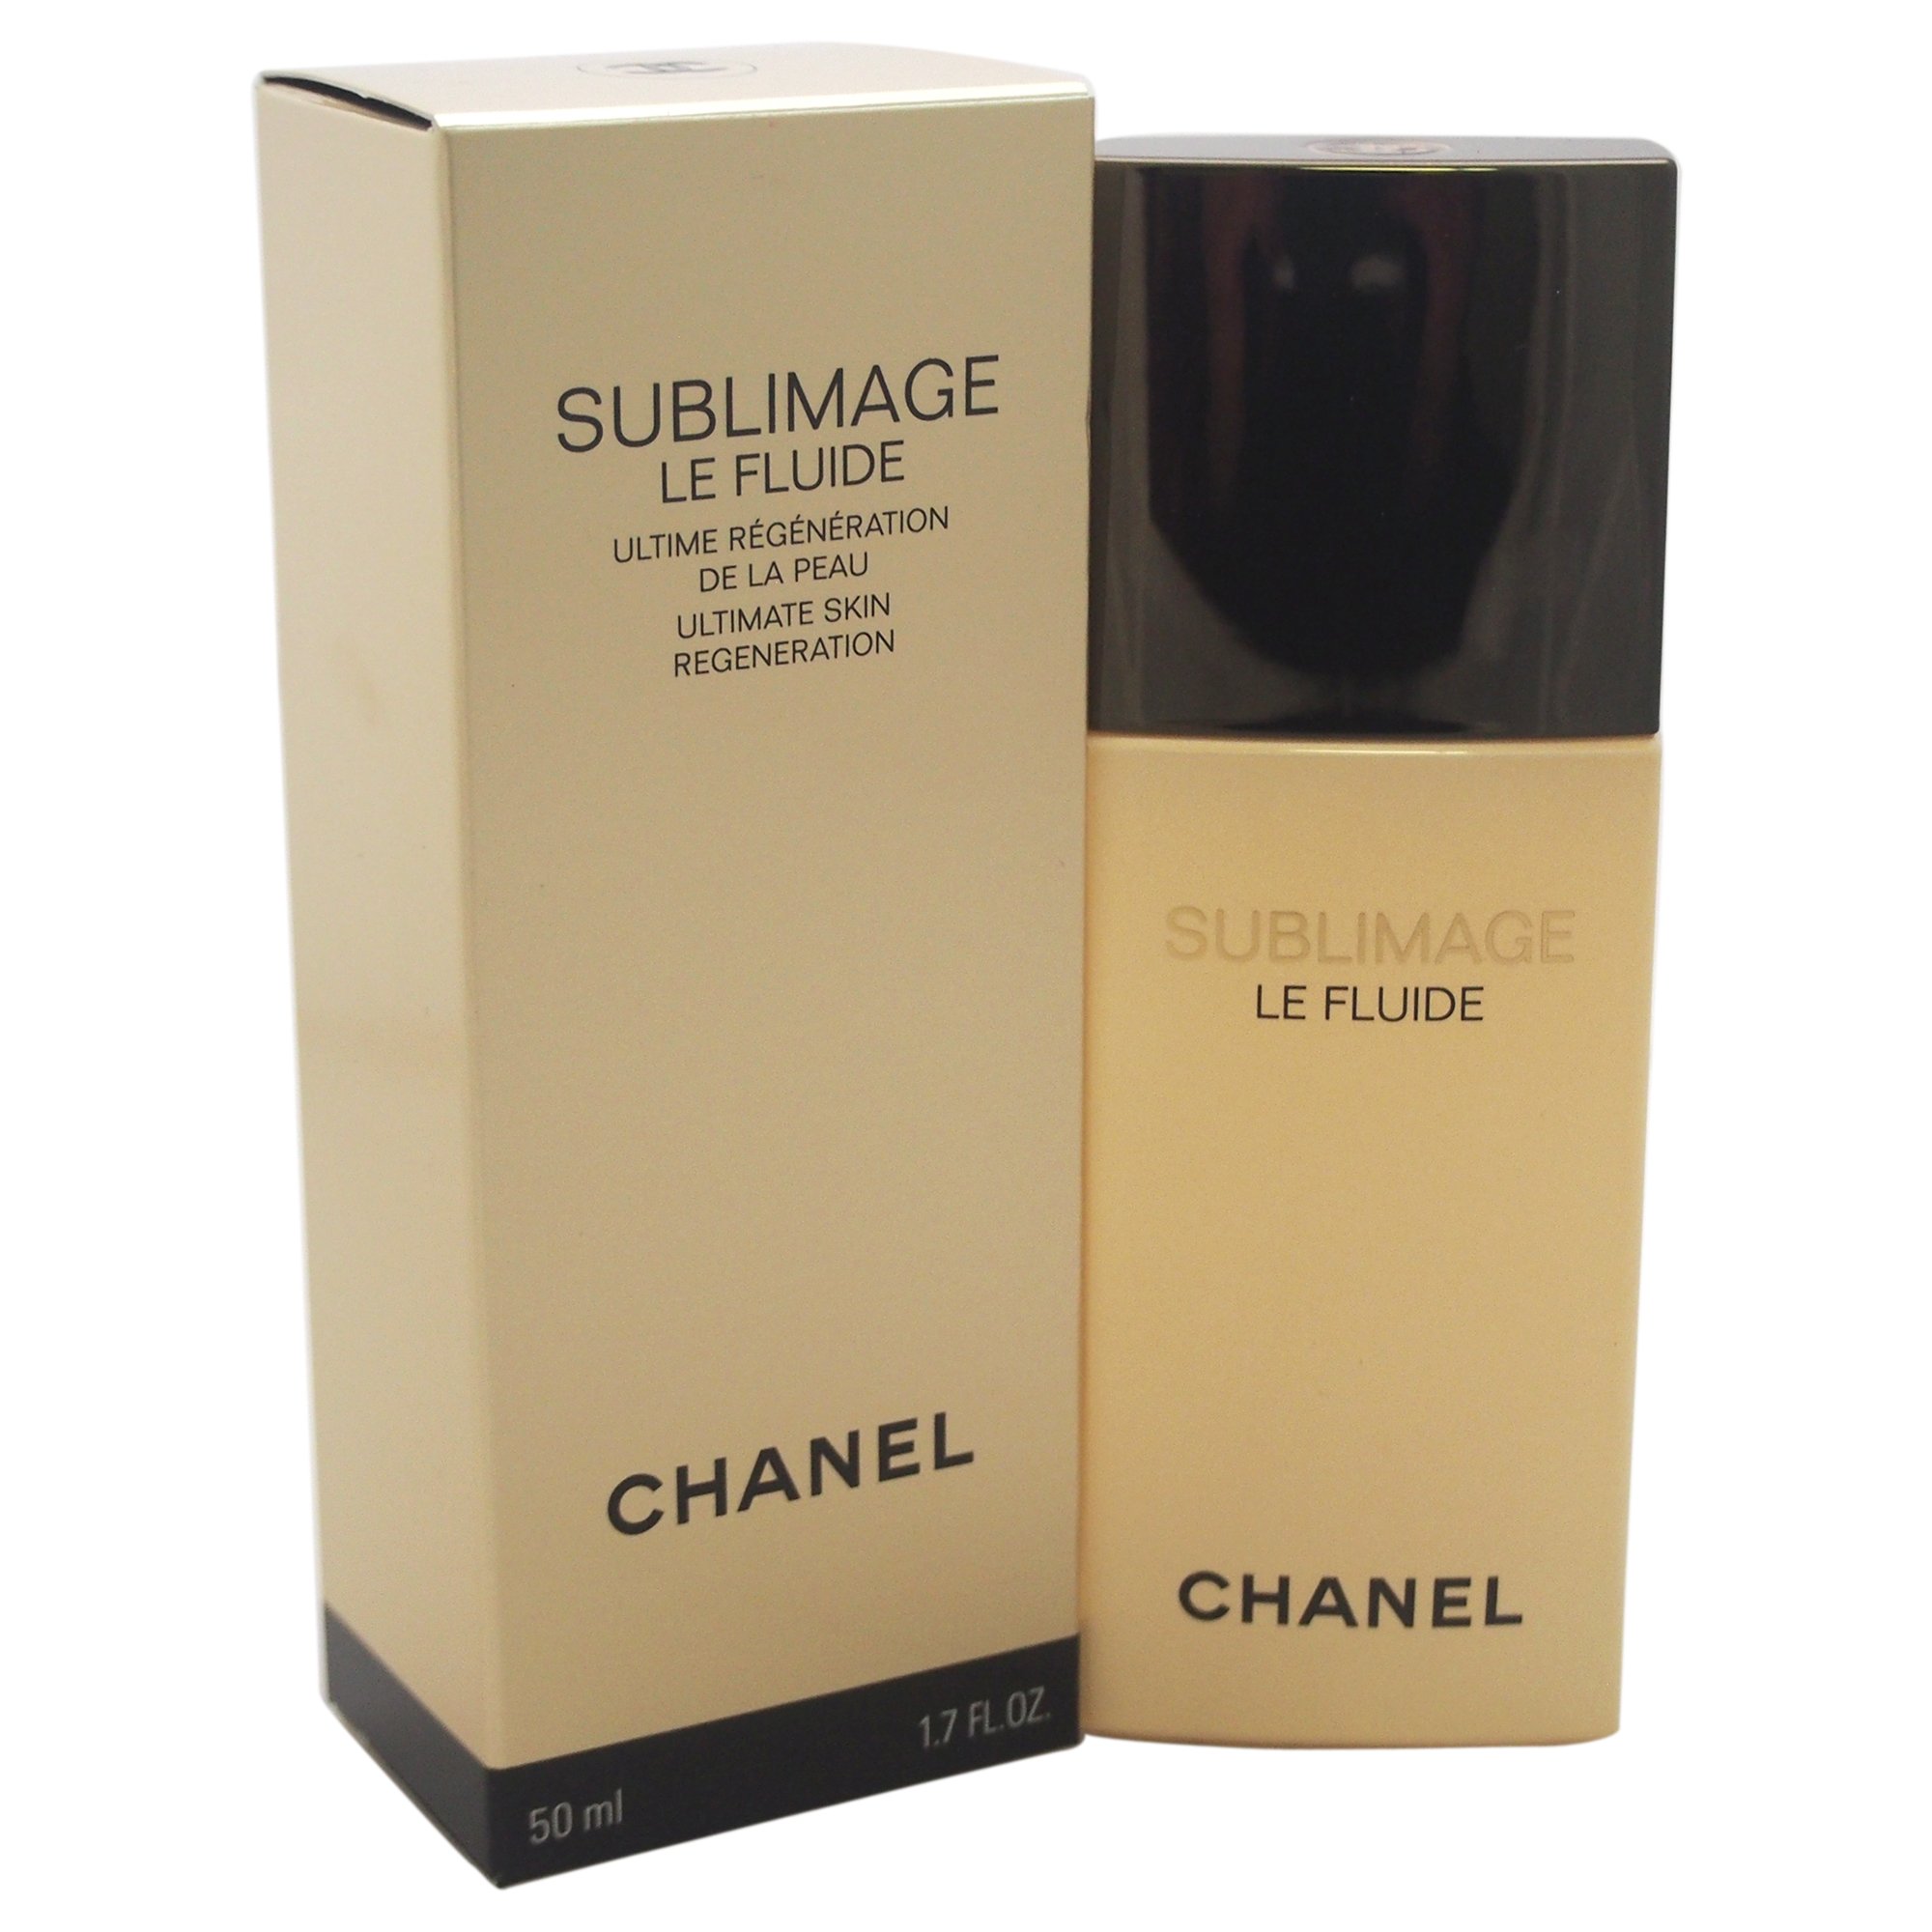 Chanel Sublimage Le Fluide buy to Bangladesh CosmoStore Bangladesh